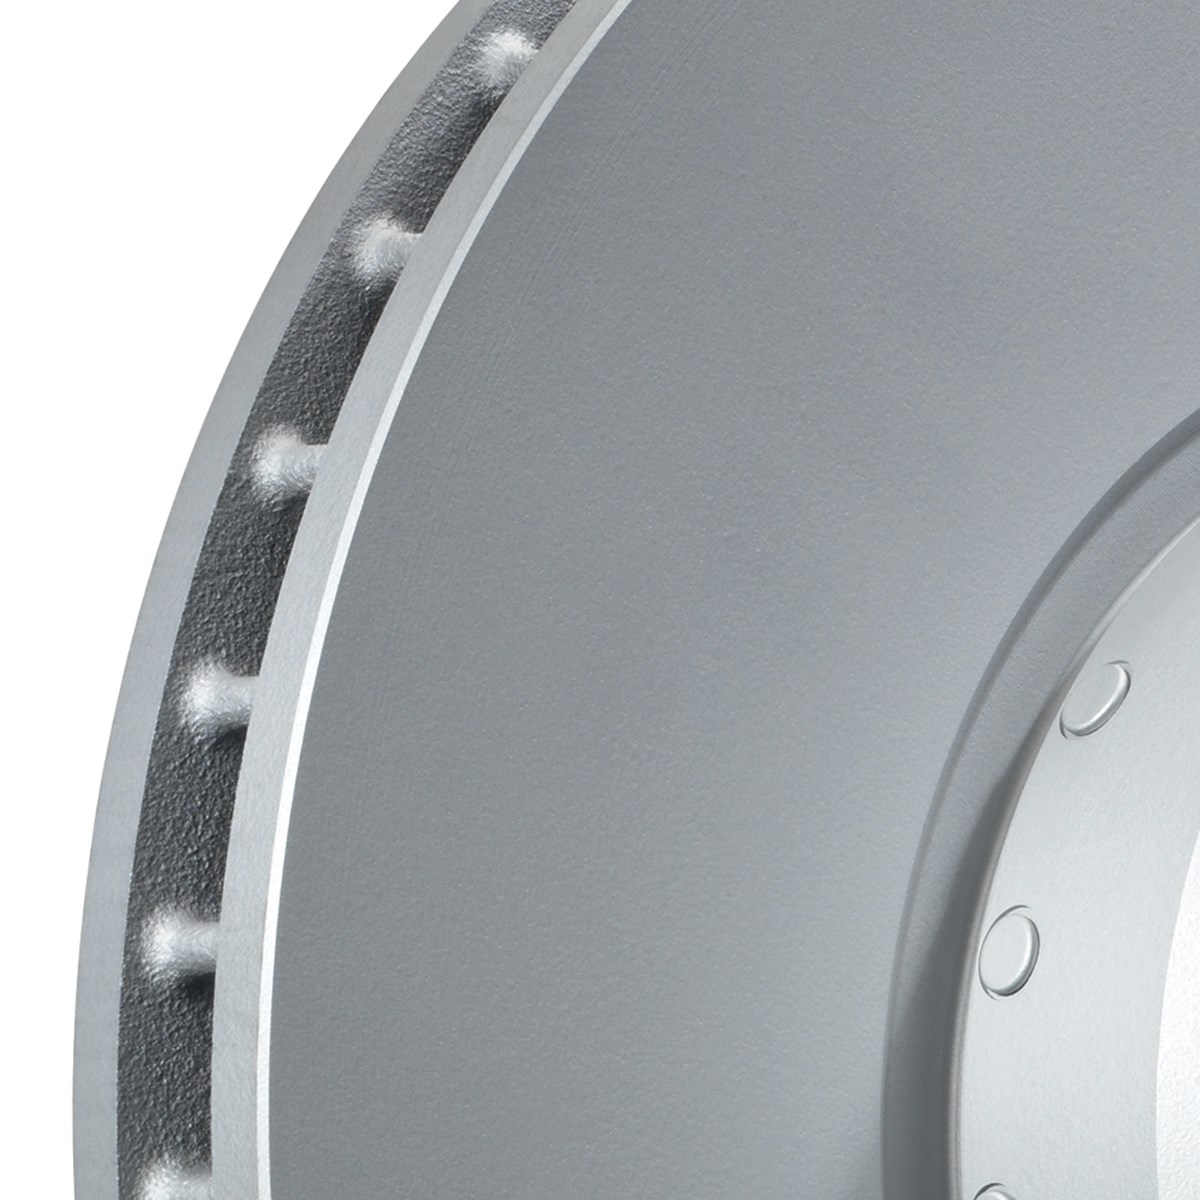 Two-piece brake disc - detail view